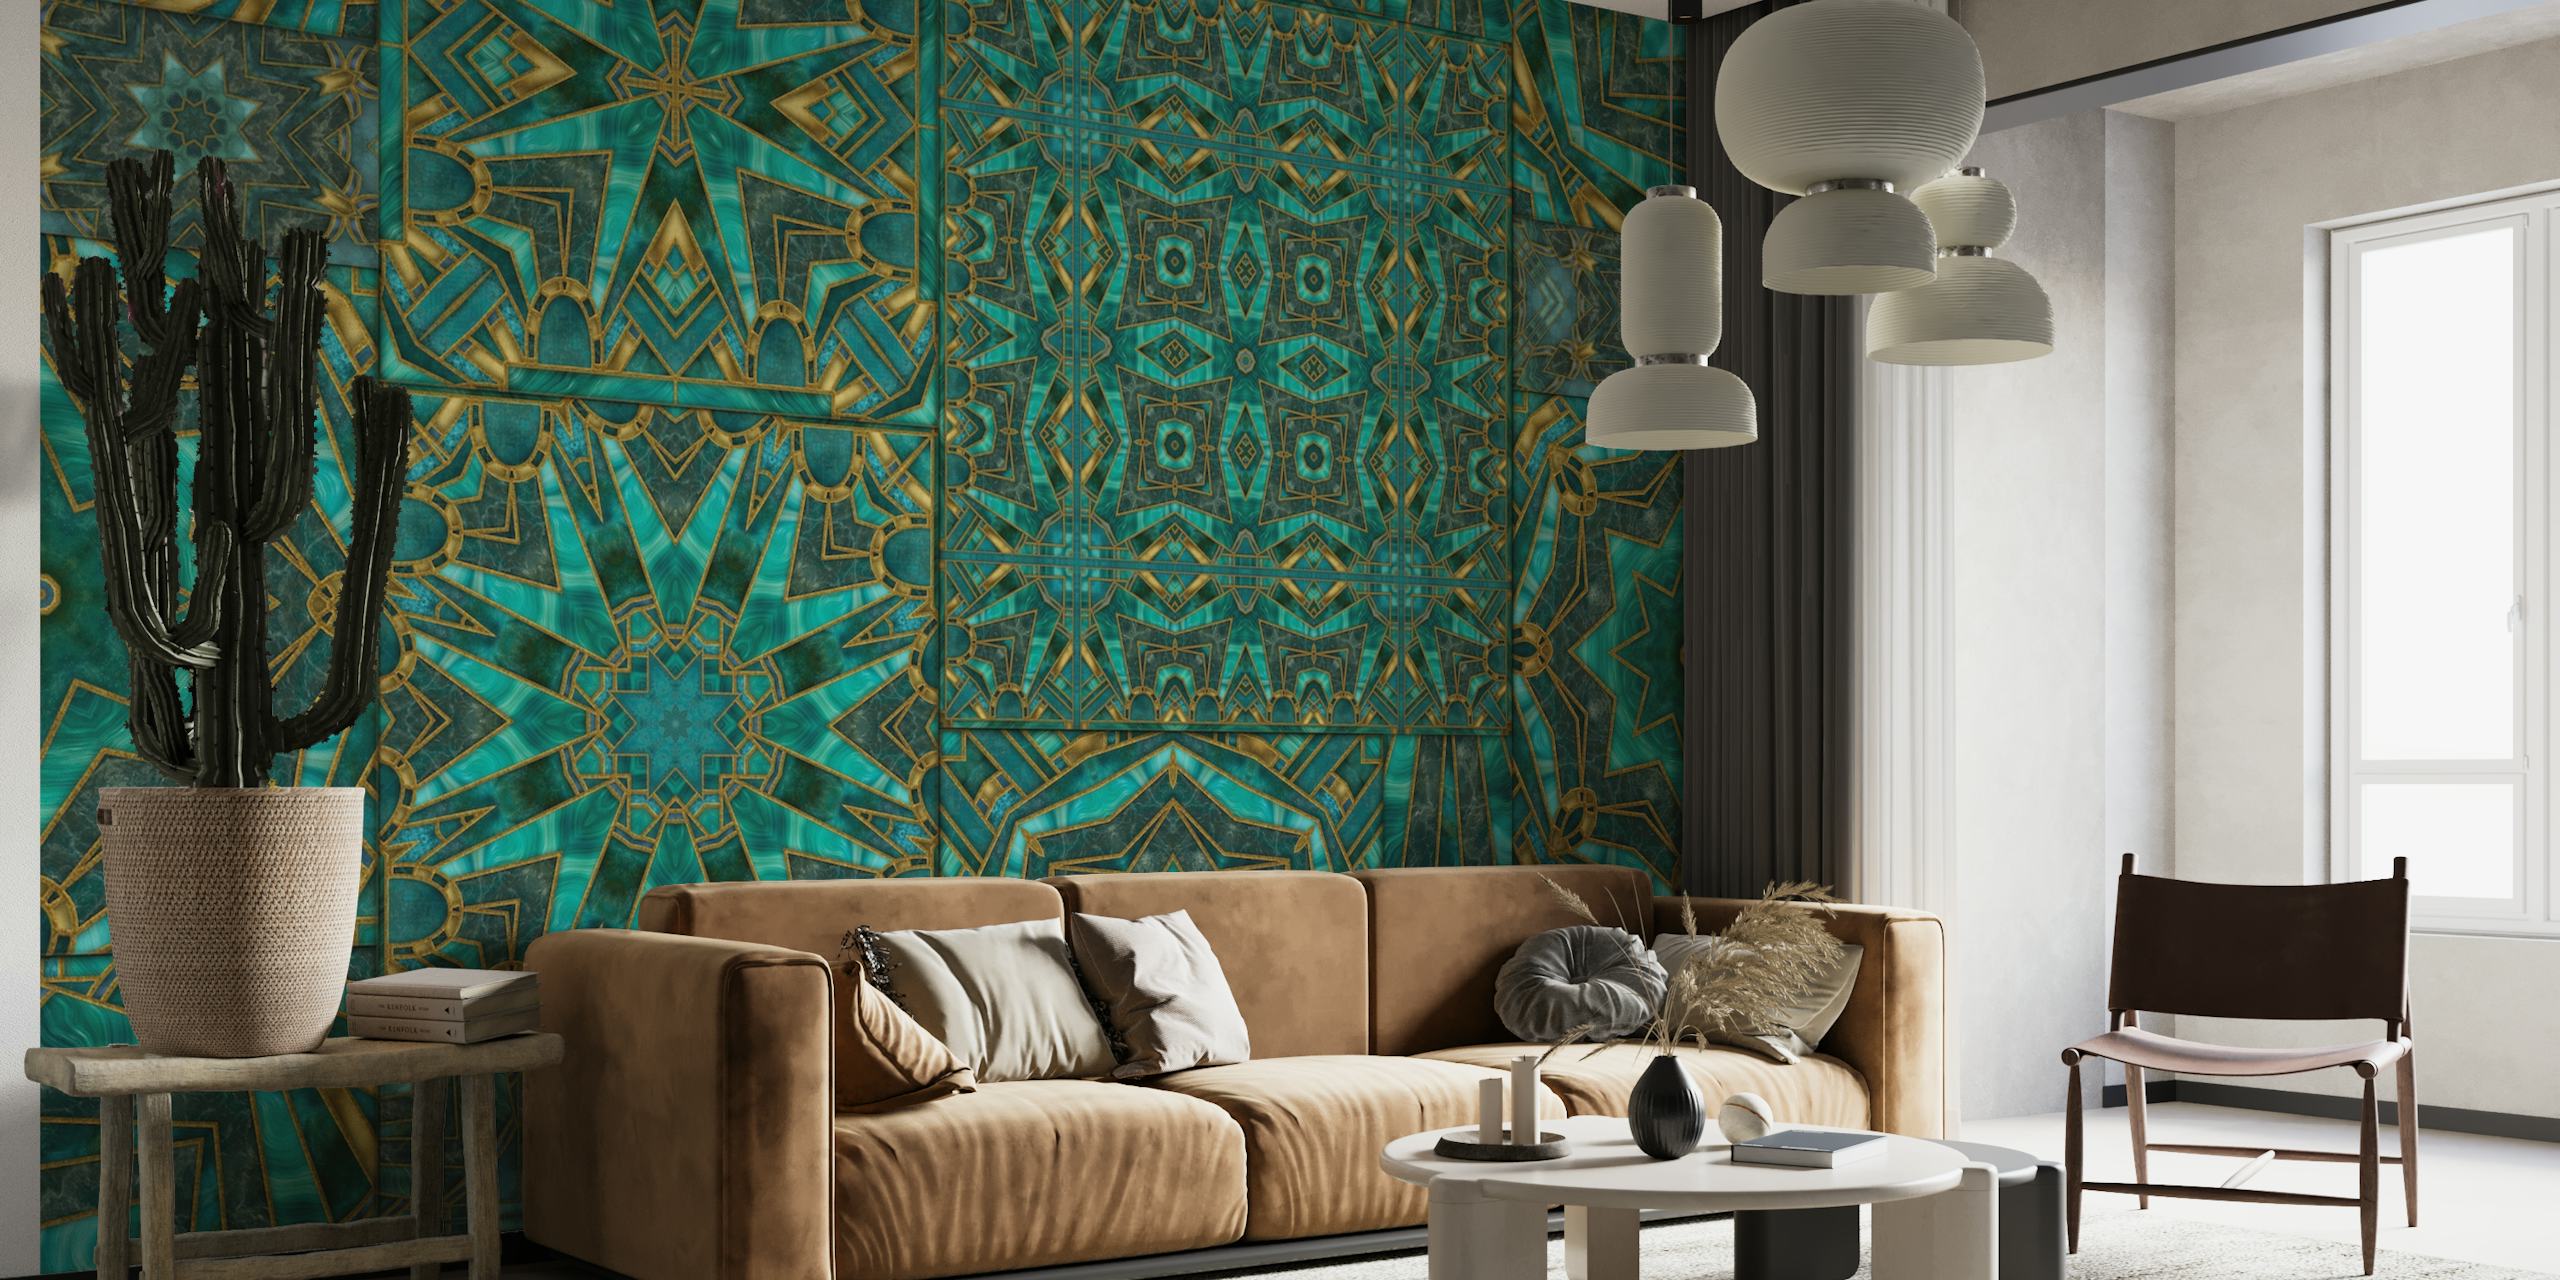 Art Deco meets Morocco Tiles 2 wallpaper